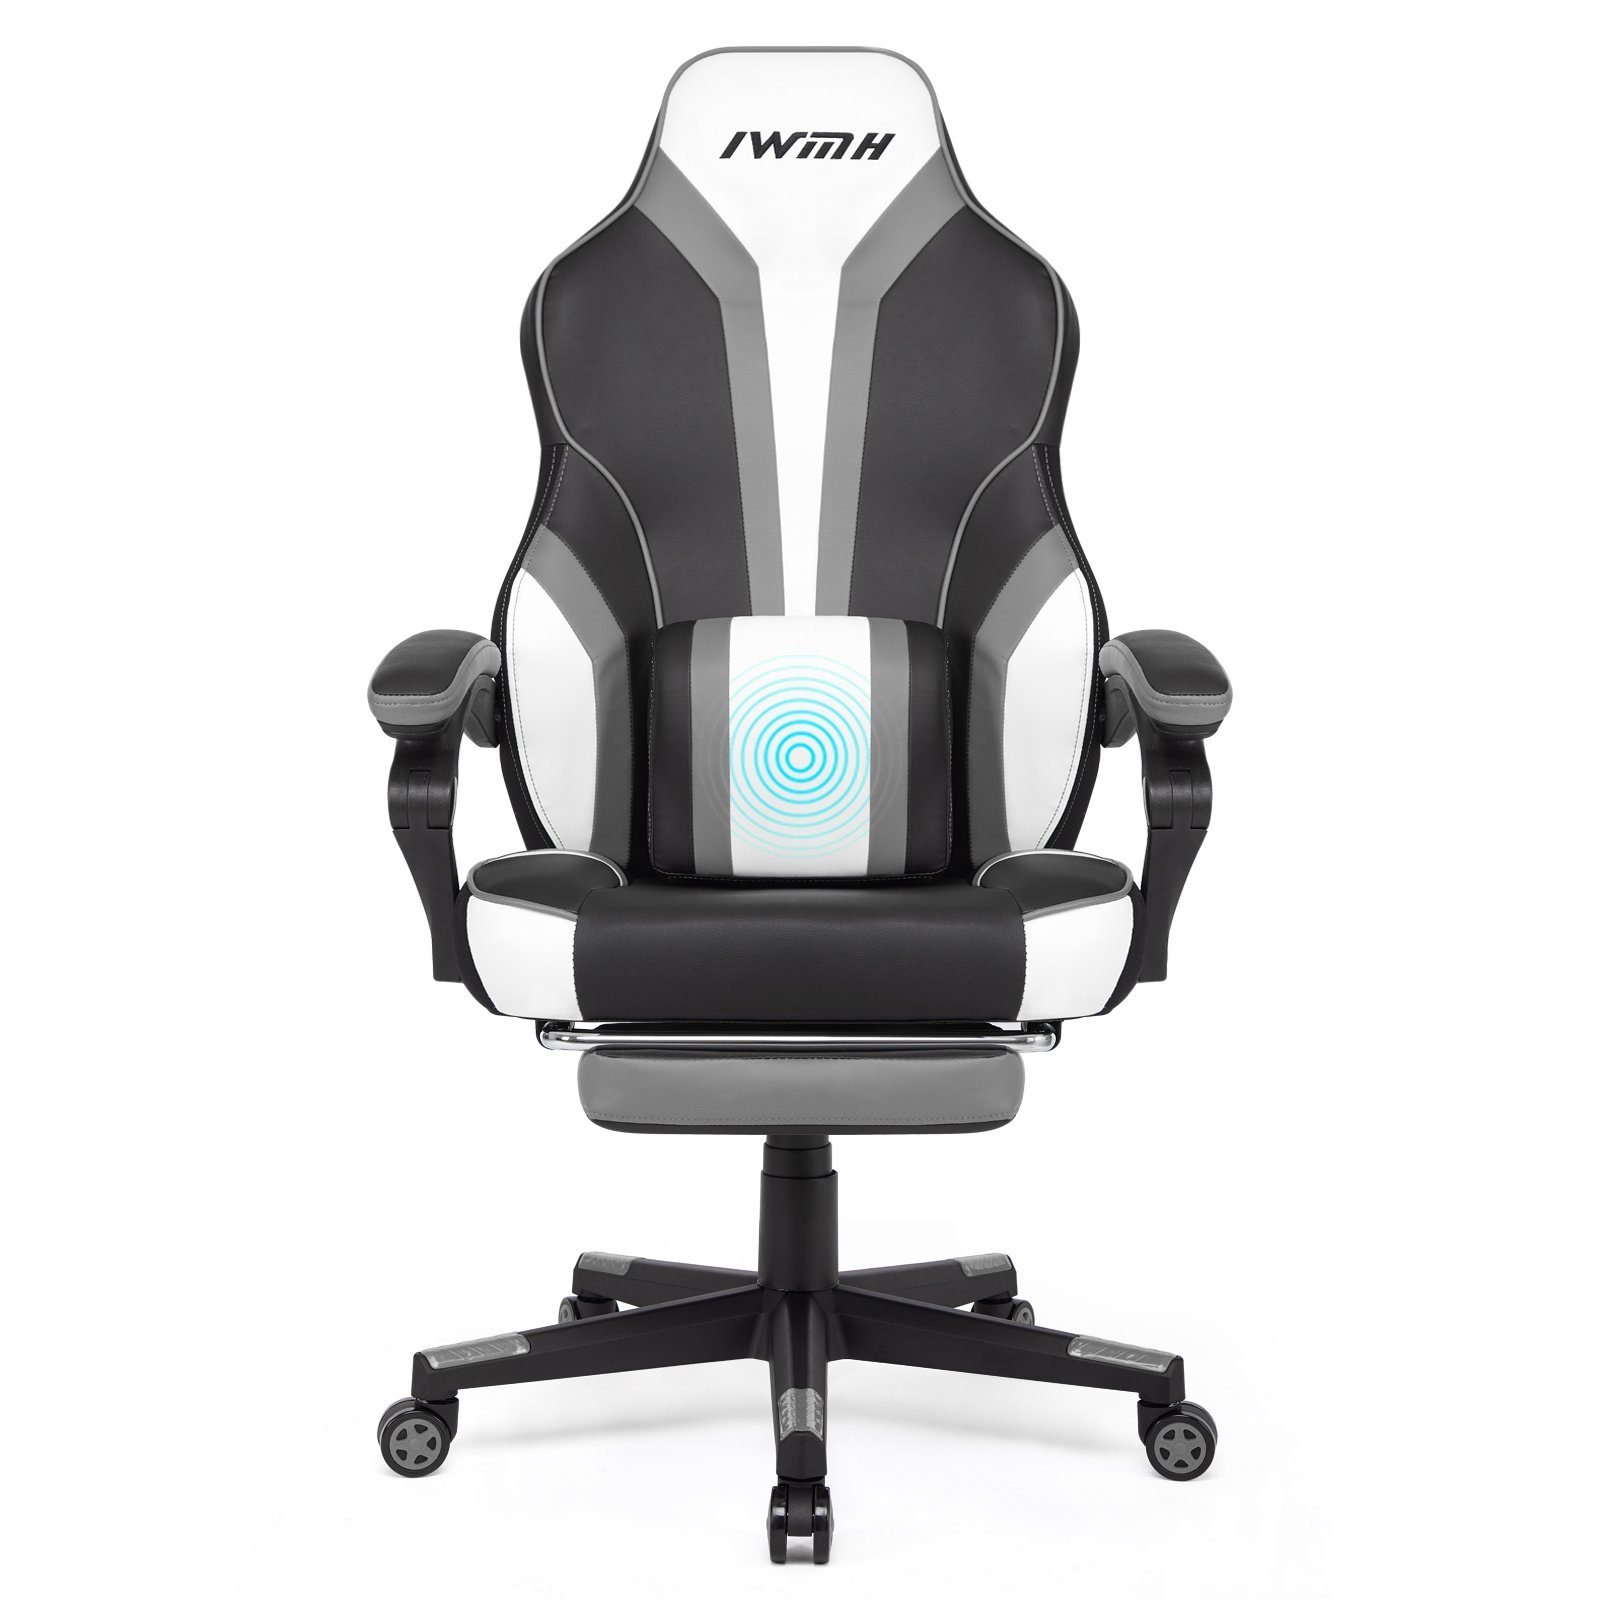 Intimate WM Heart Gaming-Stuhl, mit und Massage-Lendenstütze hoher Rückenlehne, grau Fußstütze klappbarer